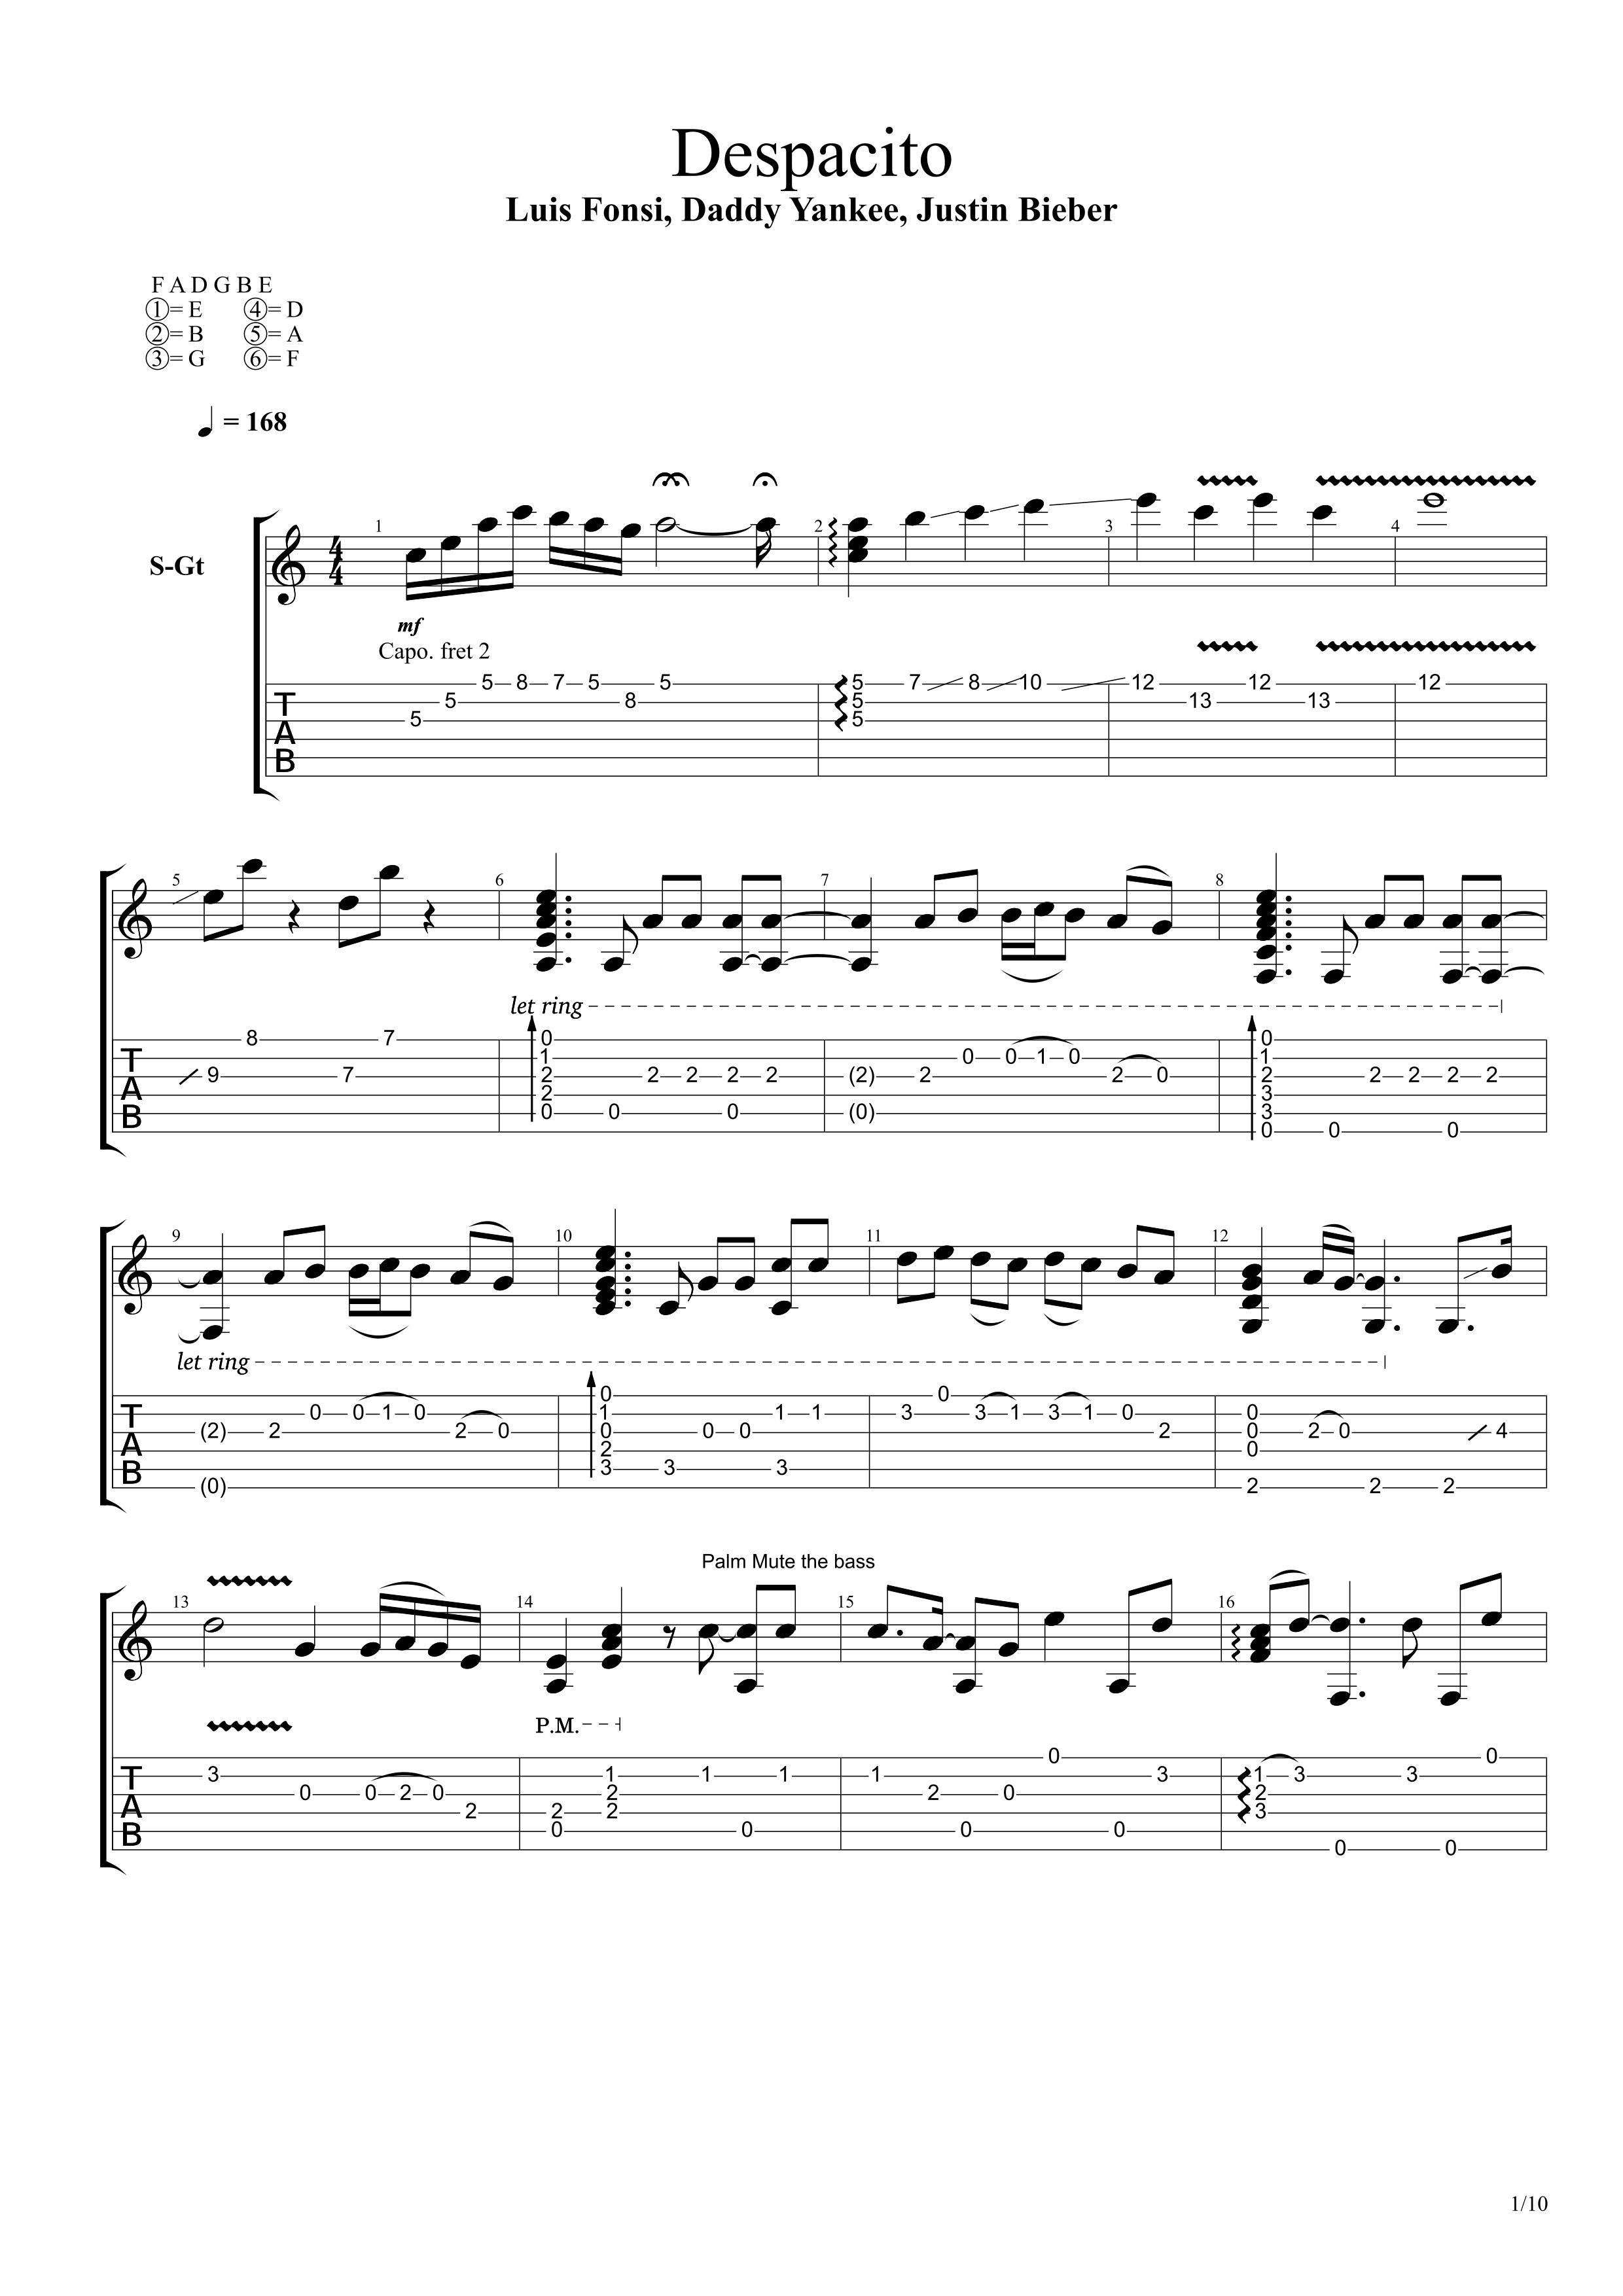 Despacito (guitarra) - Sheet music for Classical Guitar